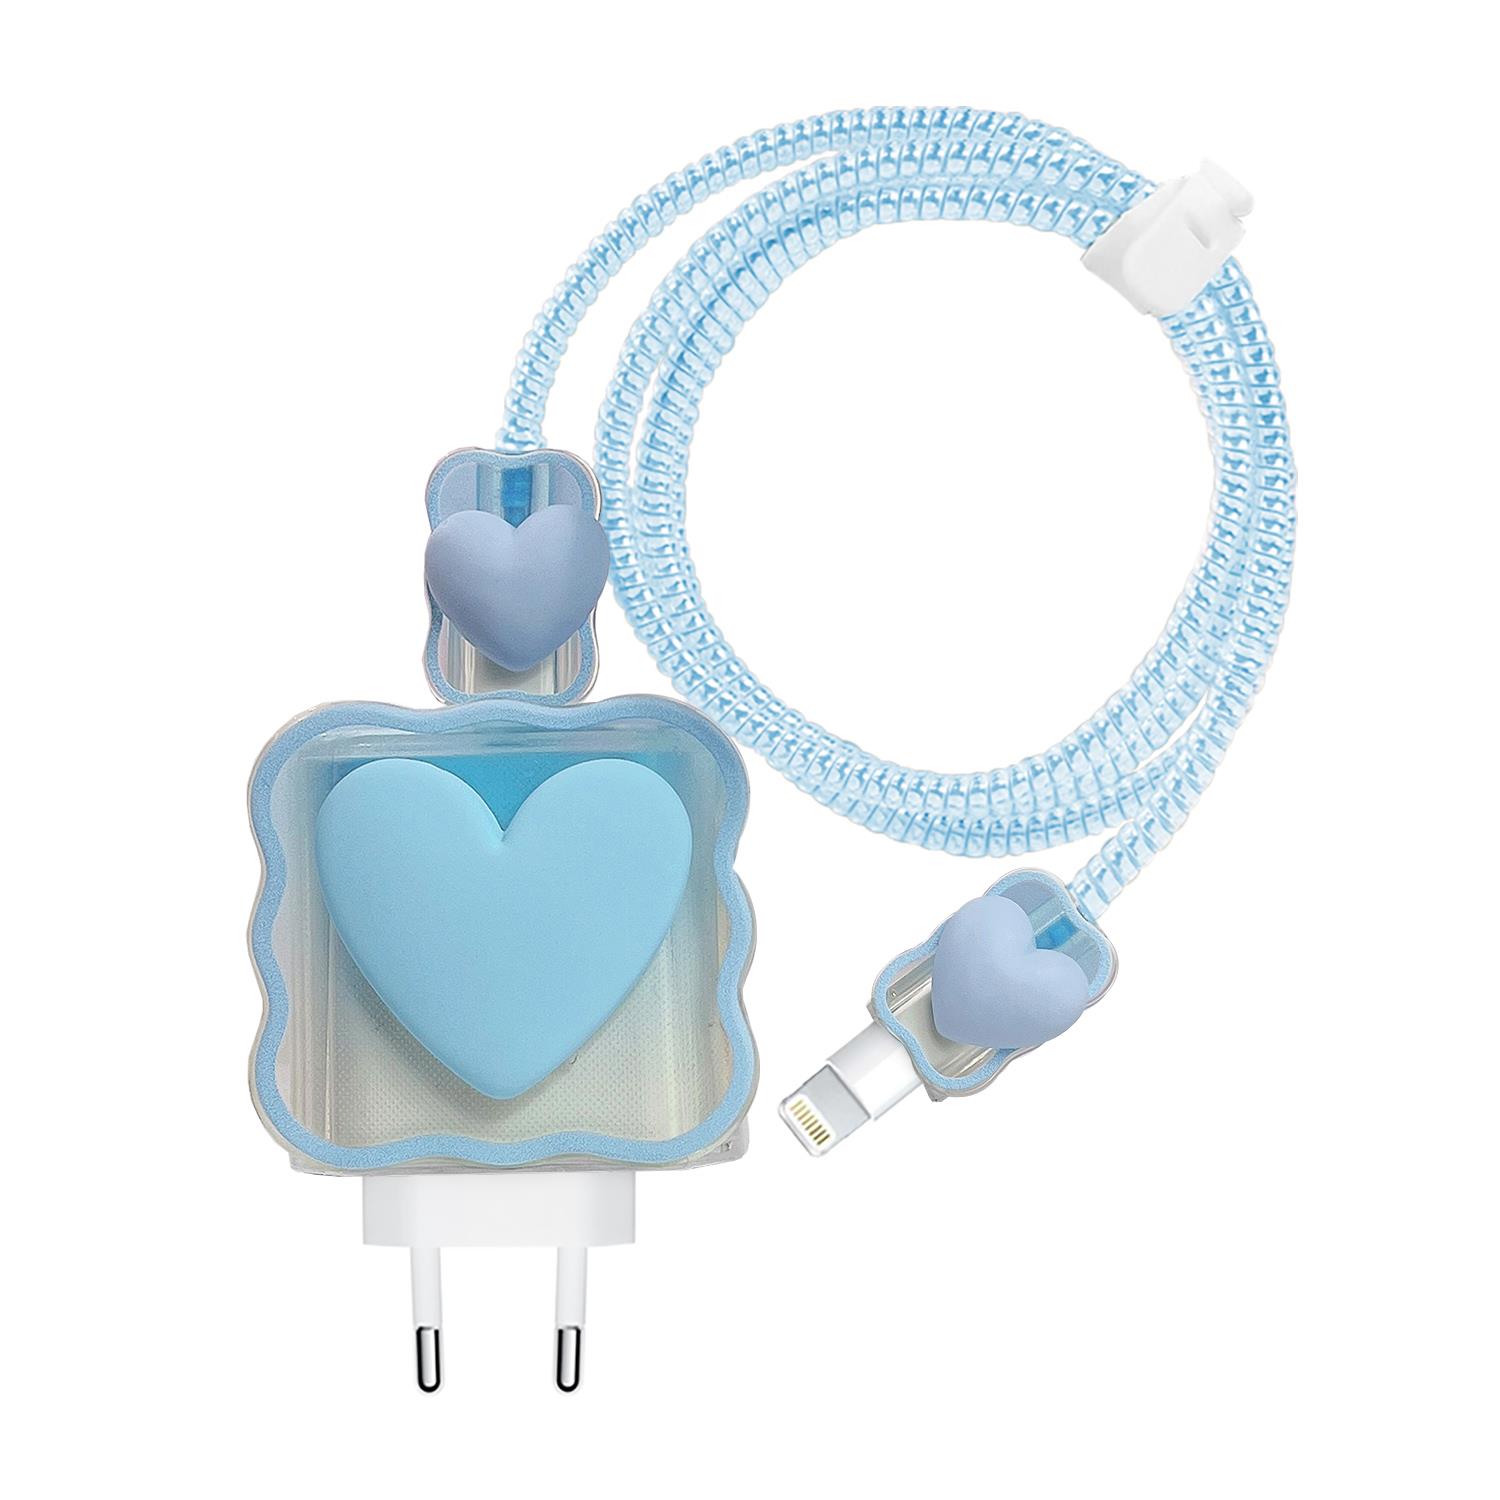 Microsonic Apple iPhone Kablo Koruyucu ve Şarj Adaptör Kılıf Süslü Kalp Desenli Mavi